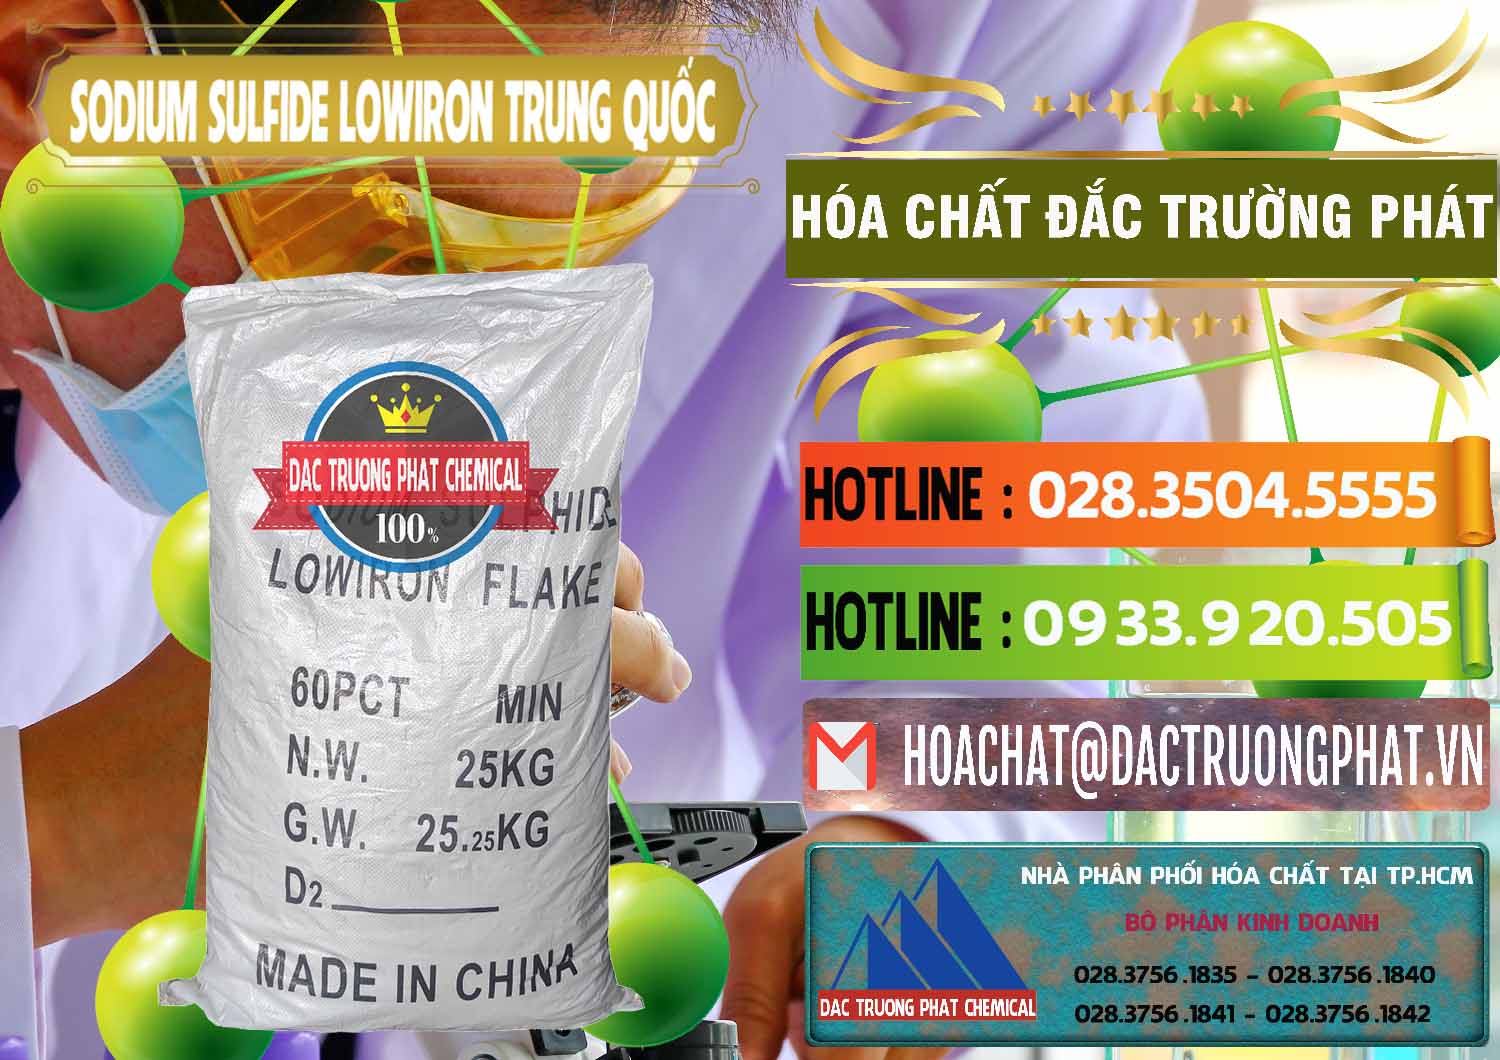 Chuyên kinh doanh và bán Sodium Sulfide NA2S – Đá Thối Lowiron Trung Quốc China - 0227 - Phân phối ( kinh doanh ) hóa chất tại TP.HCM - cungcaphoachat.com.vn